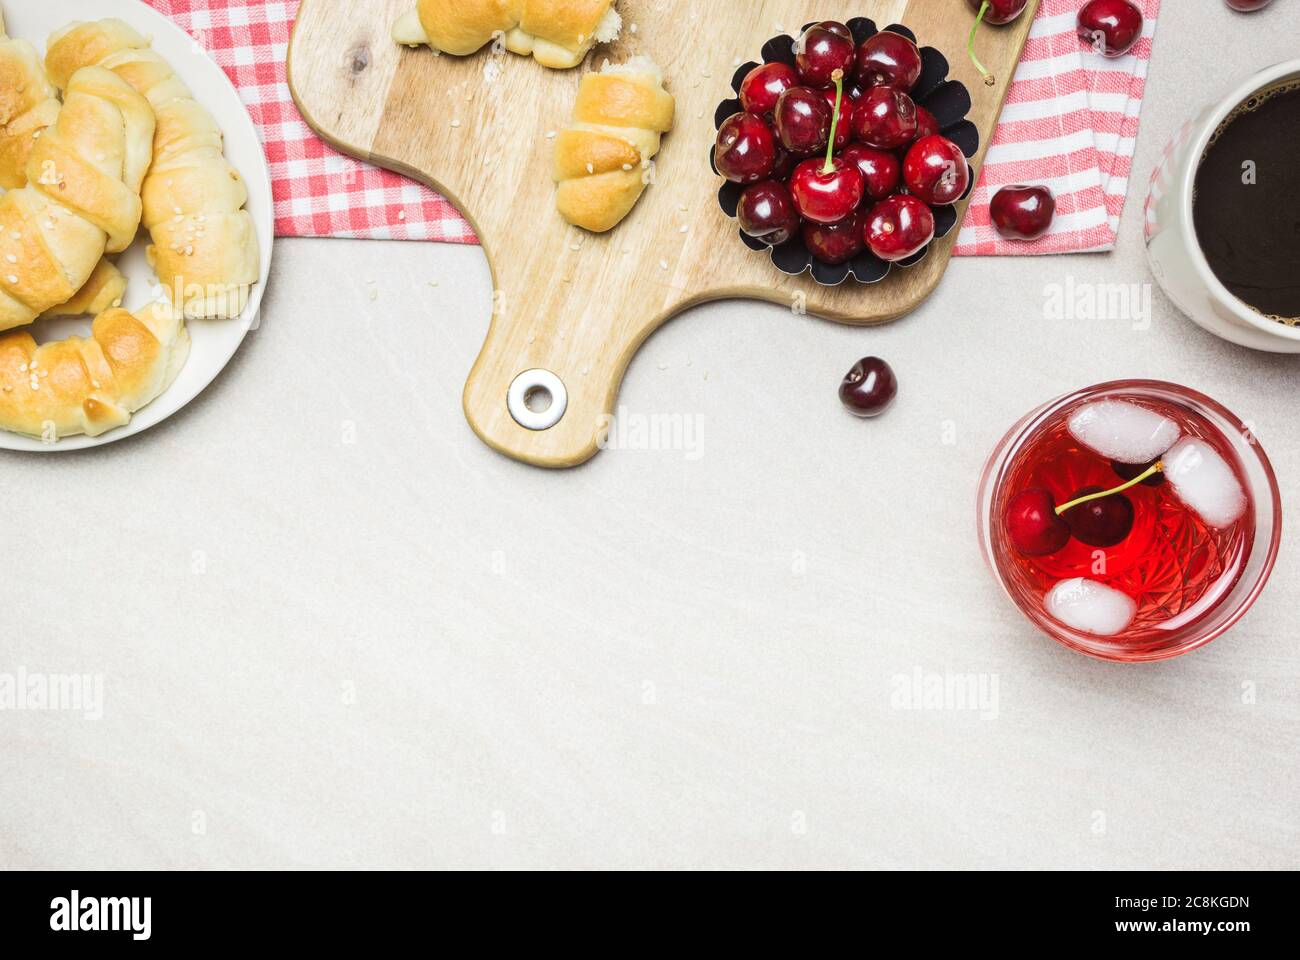 Petit-déjeuner avec croissants faits maison, café, jus de fruits et cerises douces sur fond texturé clair, vue de dessus avec photocopieuse. Banque D'Images